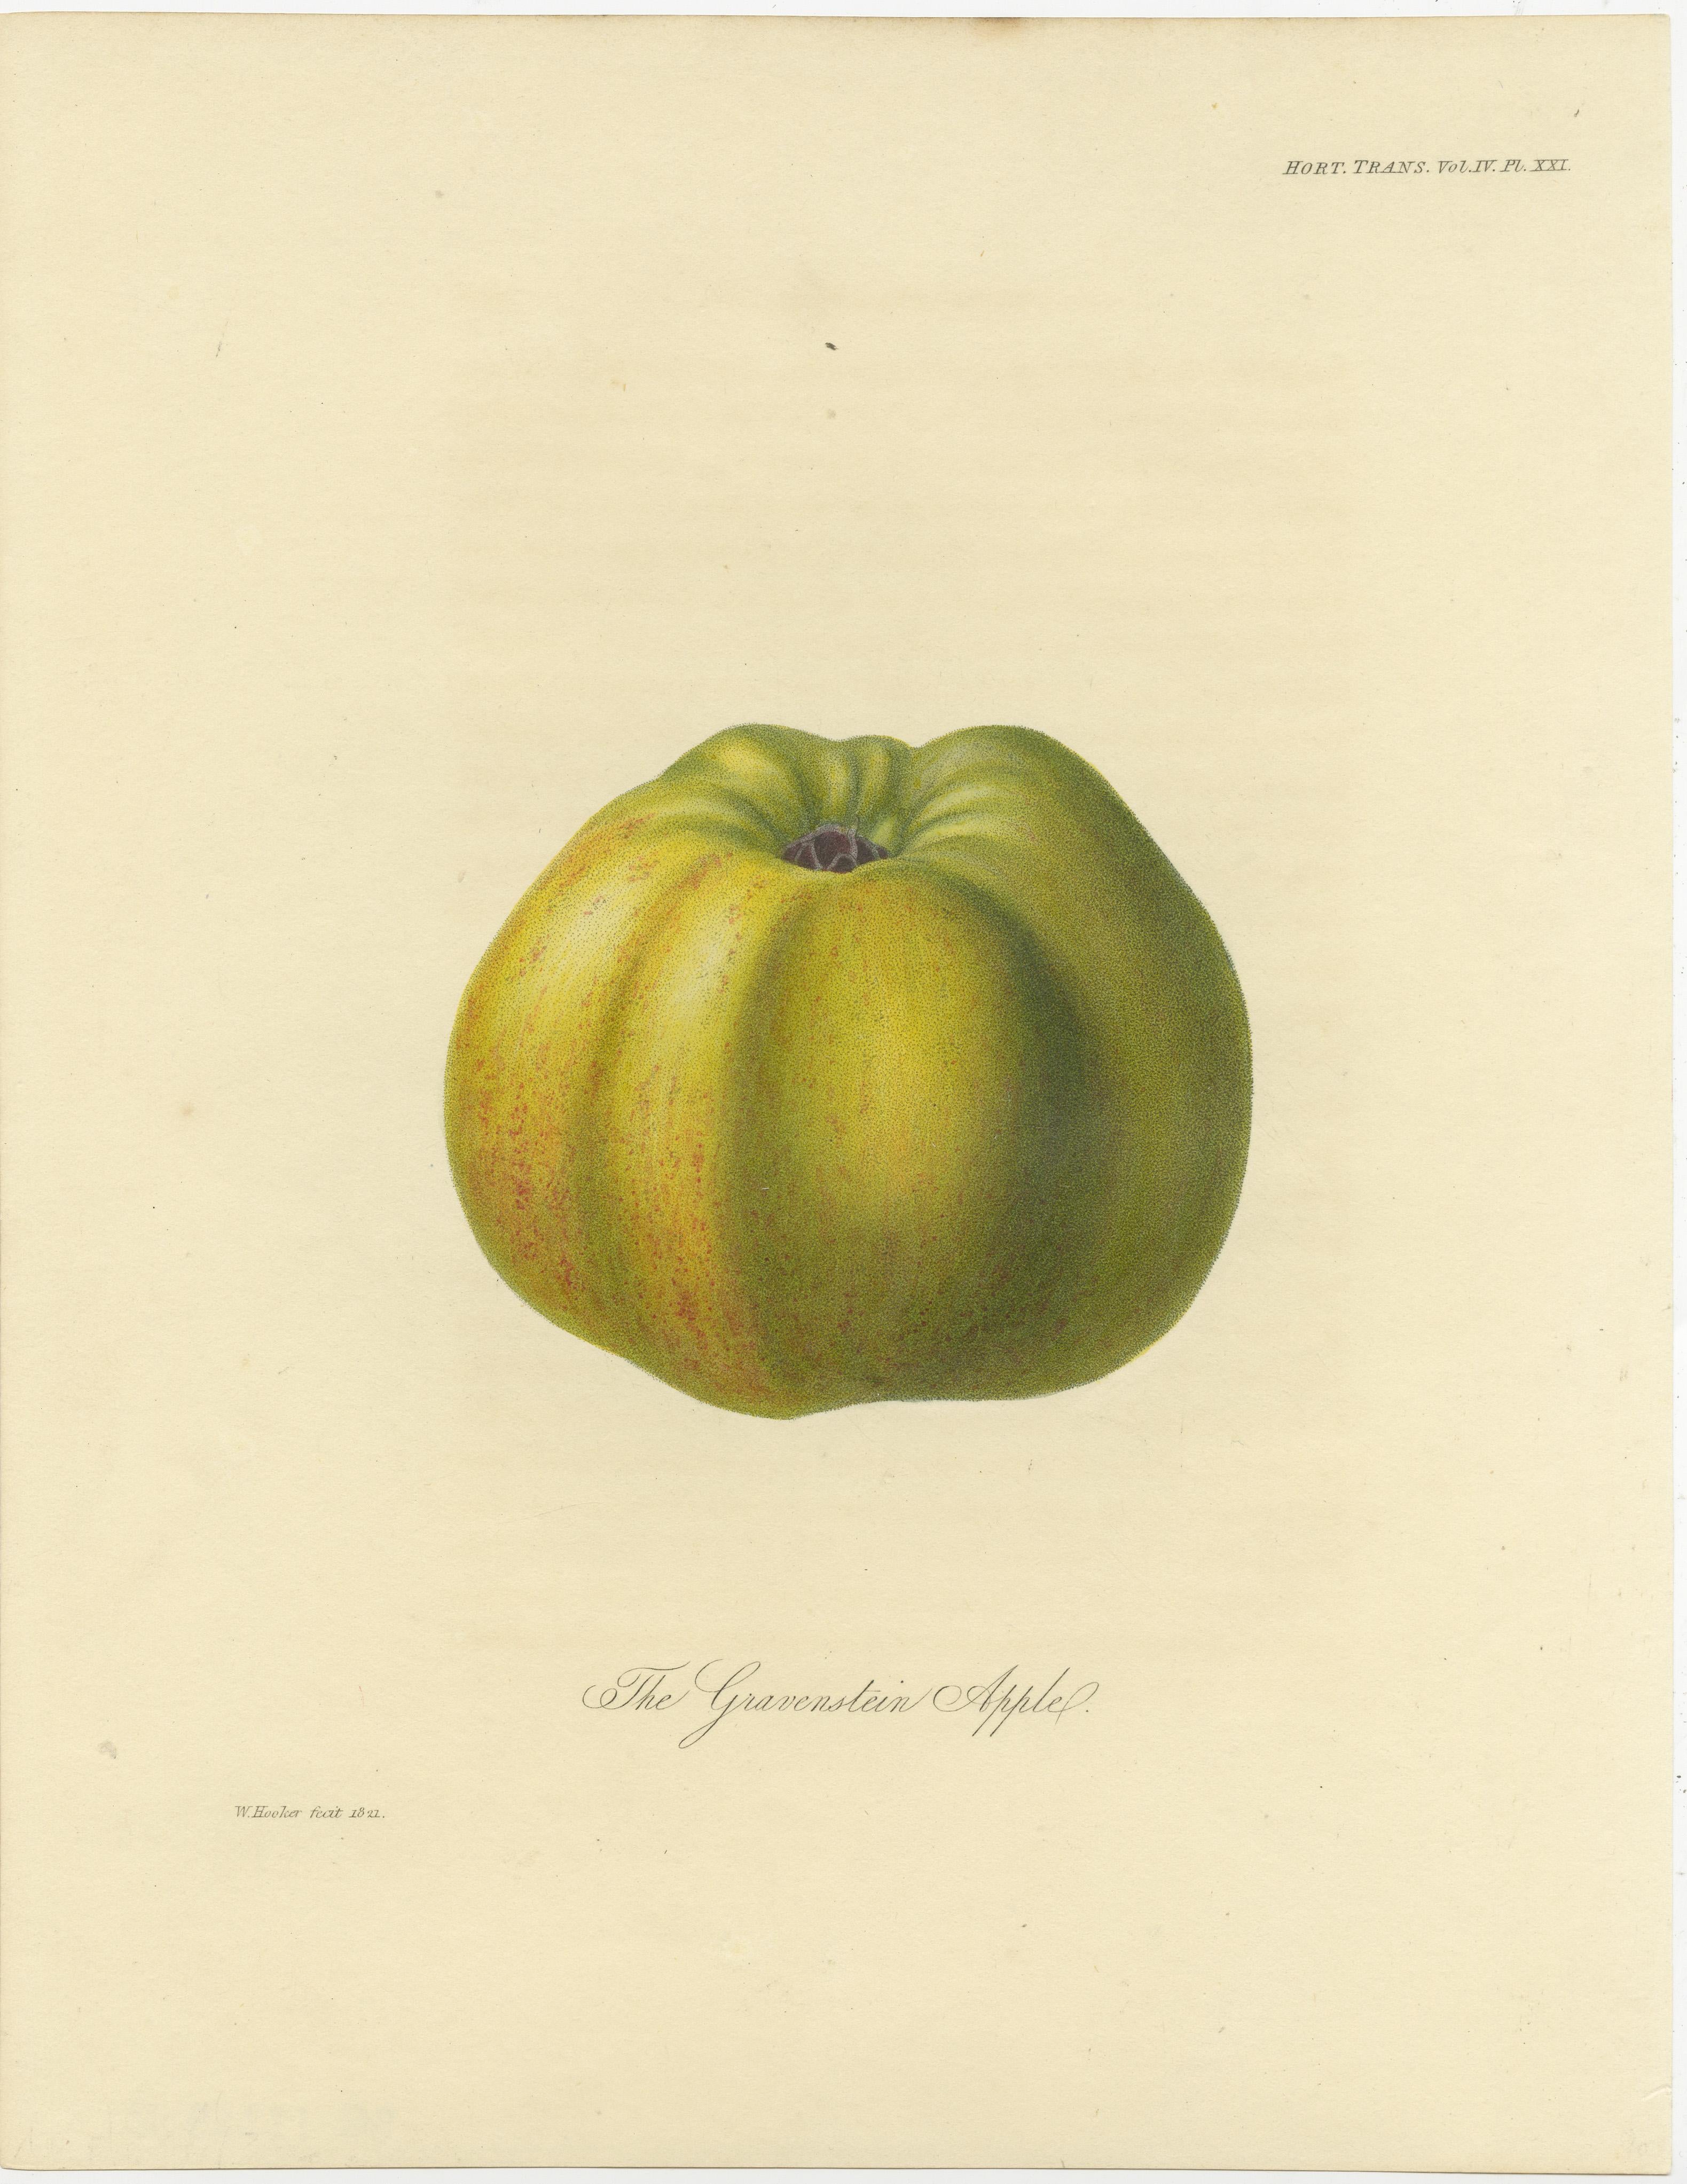 Ensemble de 2 gravures anciennes de pommes. Elle montre la pomme de Gravenstein et la pomme d'Alexander. Ces gravures proviennent des 